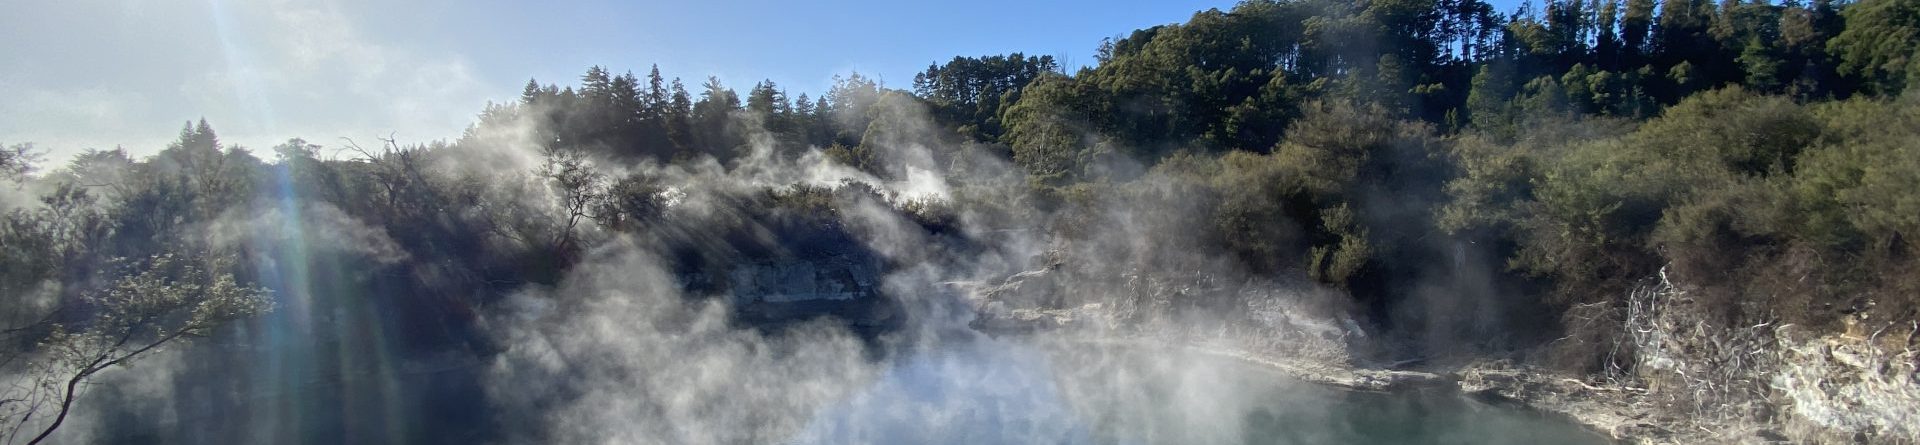 Whaka Geothermal Trails – A mais nova experiência em trilhas geotérmicas de Rotorua